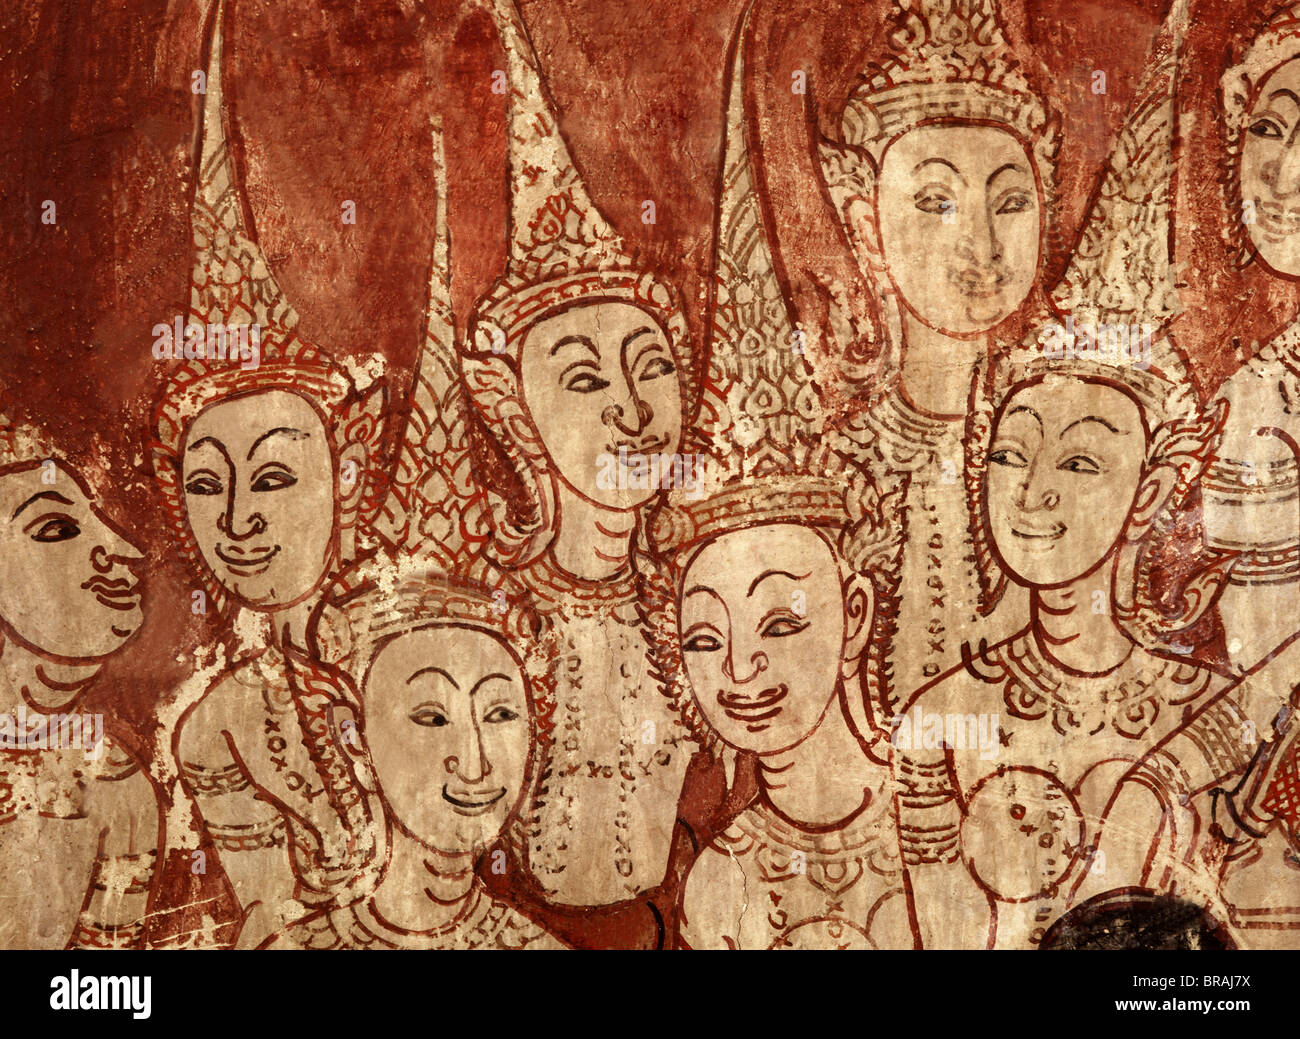 Les divinités célestes, détail de peintures murales datant de la période d'Ayutthaya, Wat Chompoowek, Nonthaburi, Thaïlande, Asie du Sud-Est Banque D'Images